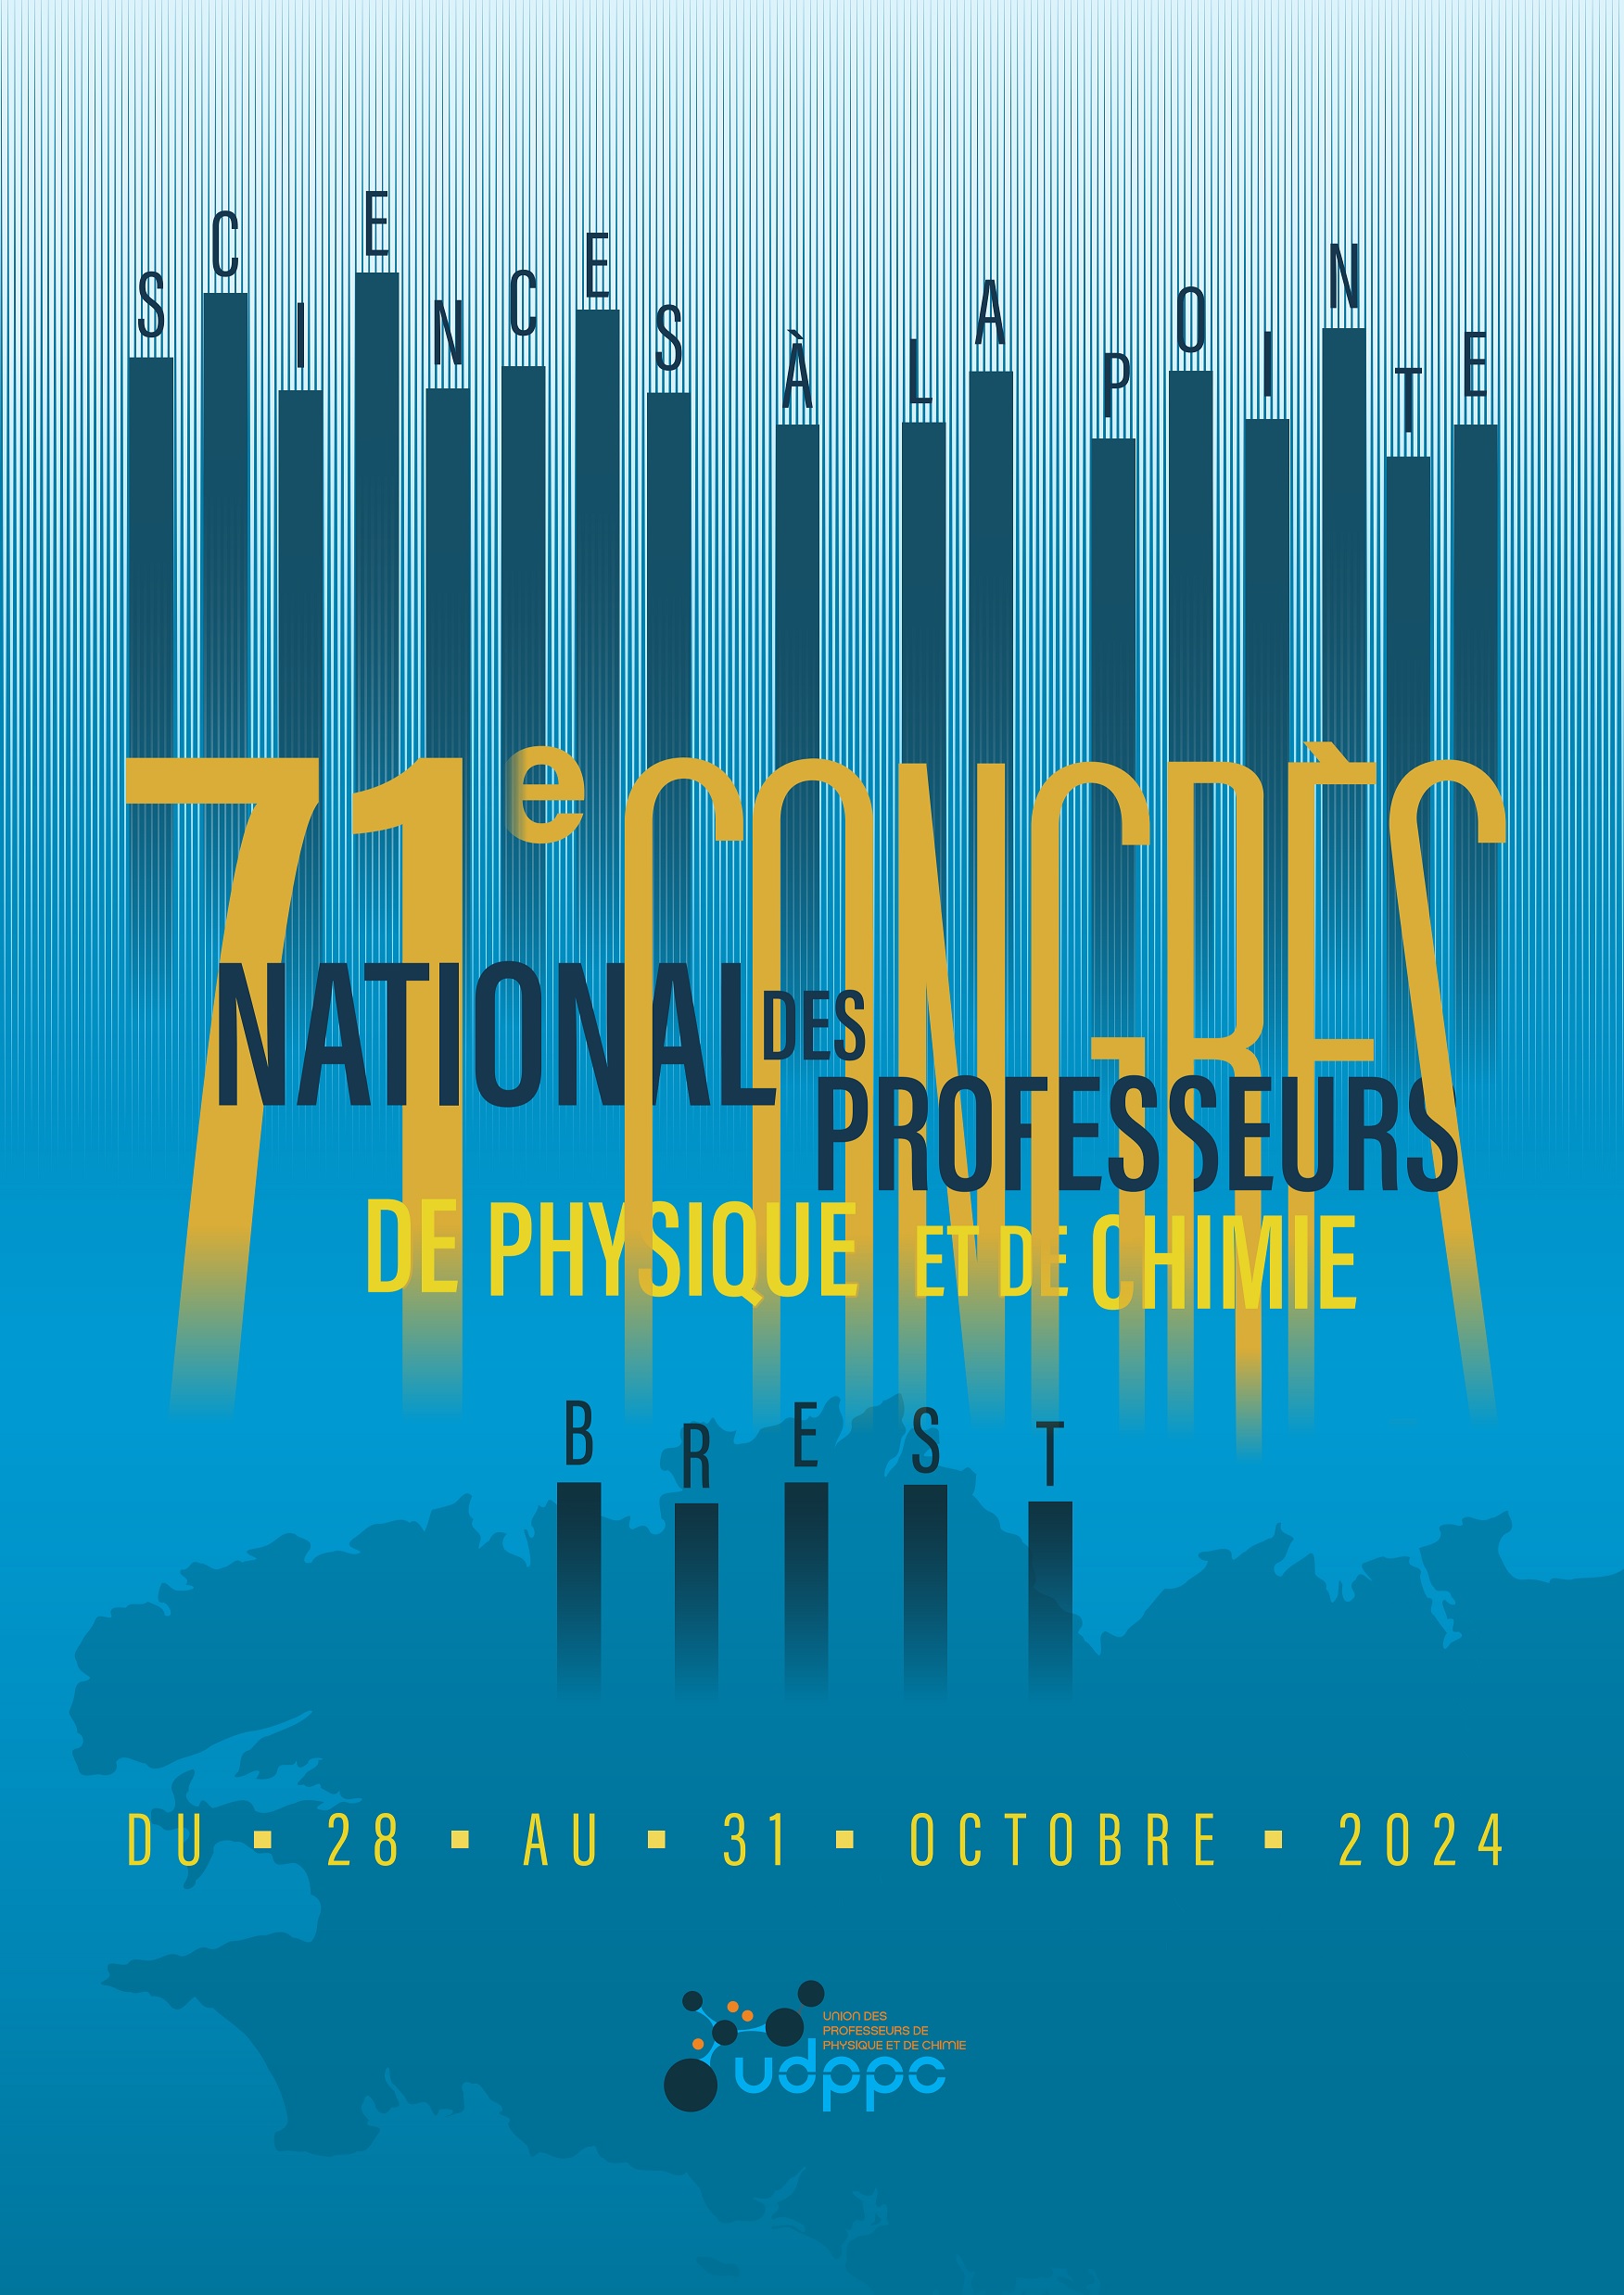 Afiche du congrès UdPPC Brest 2024 